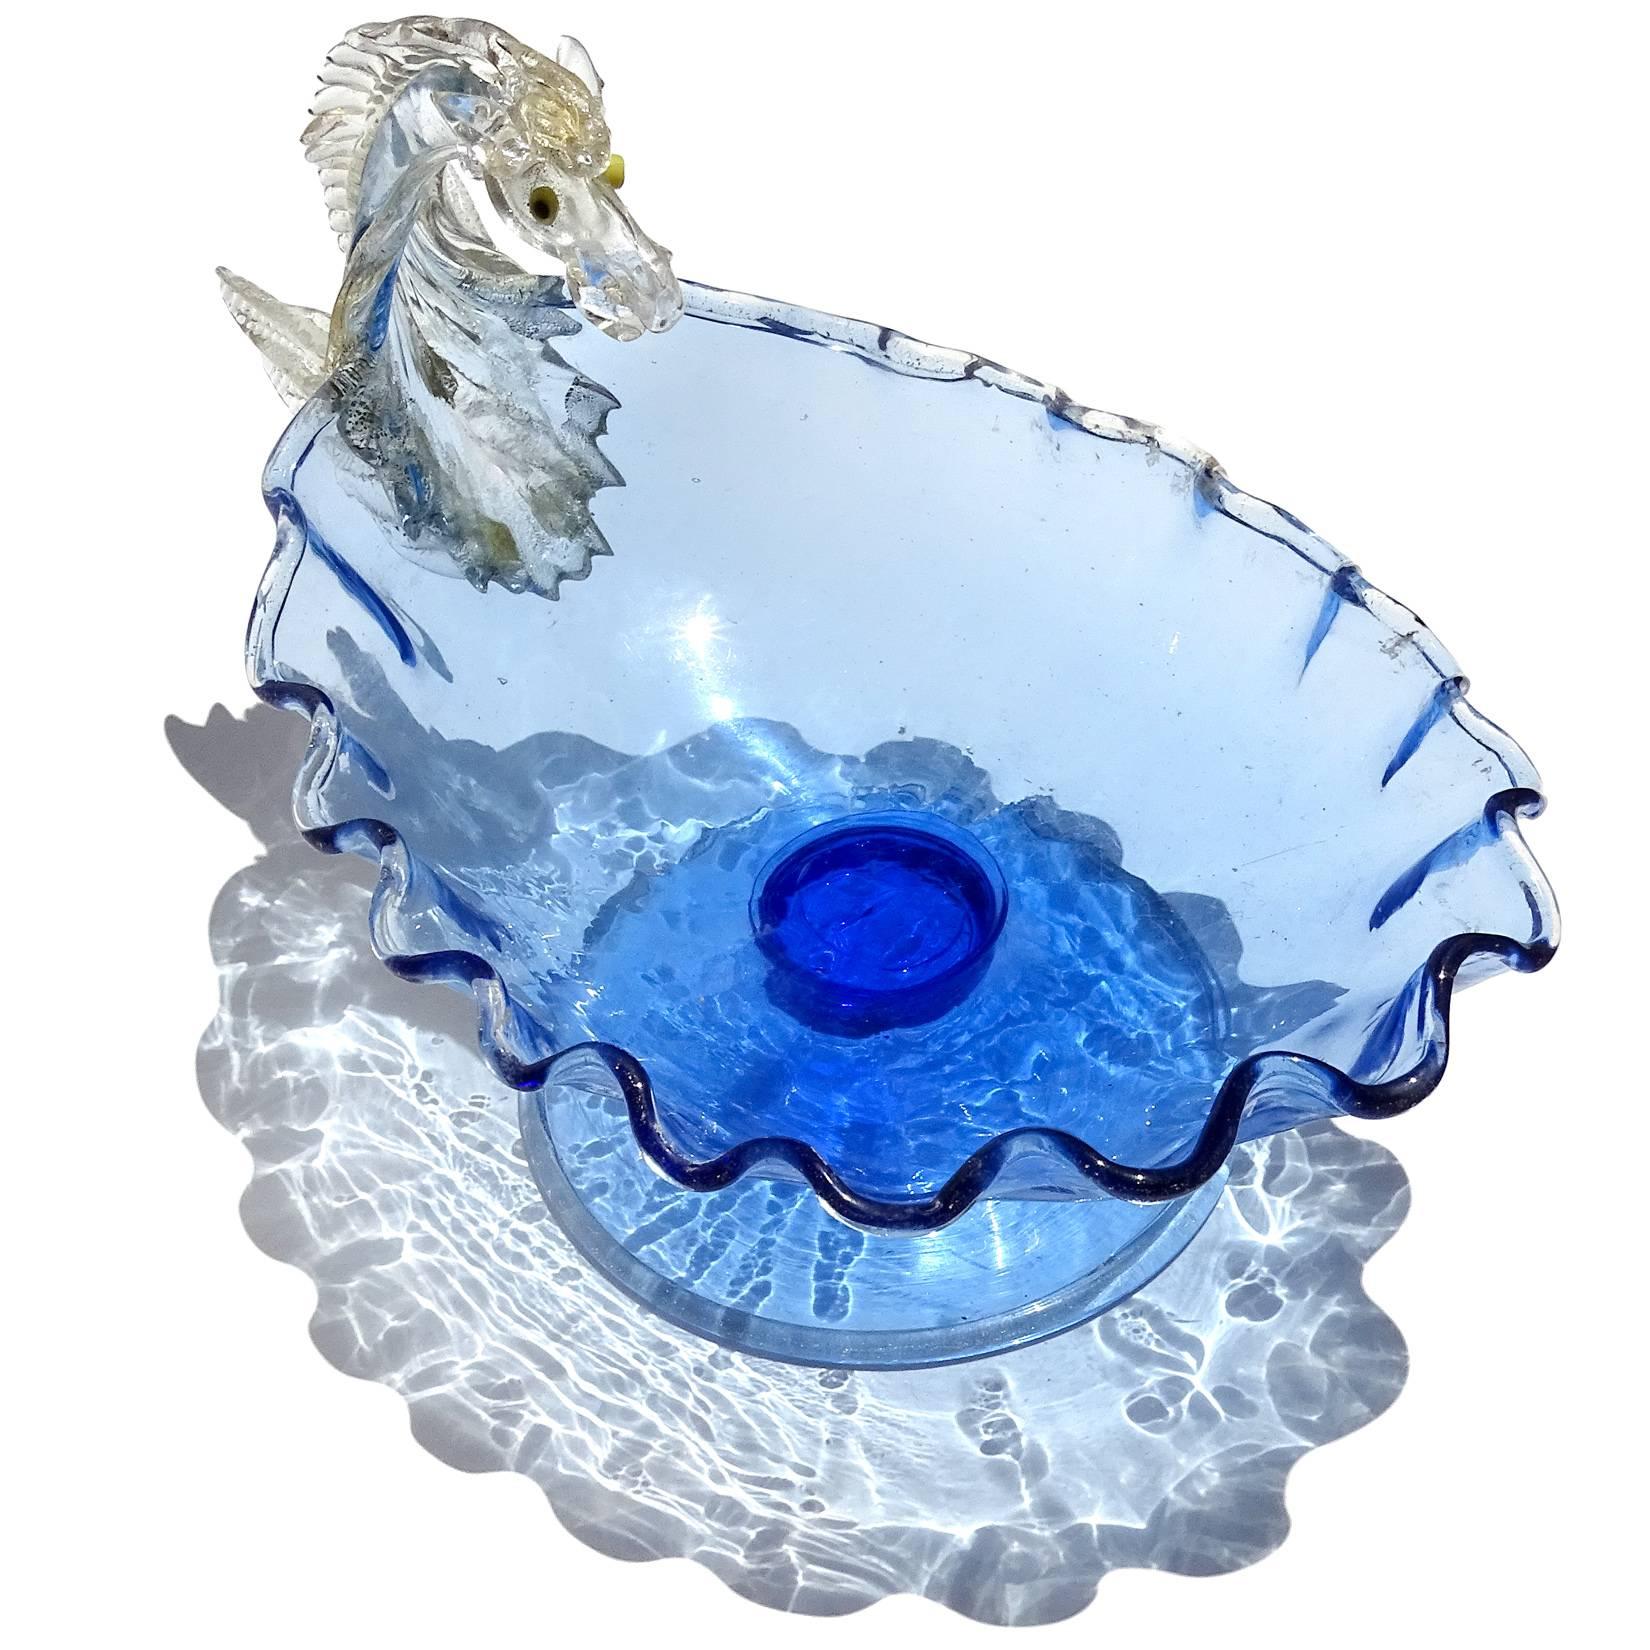 Antique bol à compote en verre d'art italien du début de la période vénitienne, bleu cobalt avec accents dorés, représentant un cheval Pégase. Attribué aux entreprises Artisti Barovier / Fratelli Toso, comme publié dans le livre 